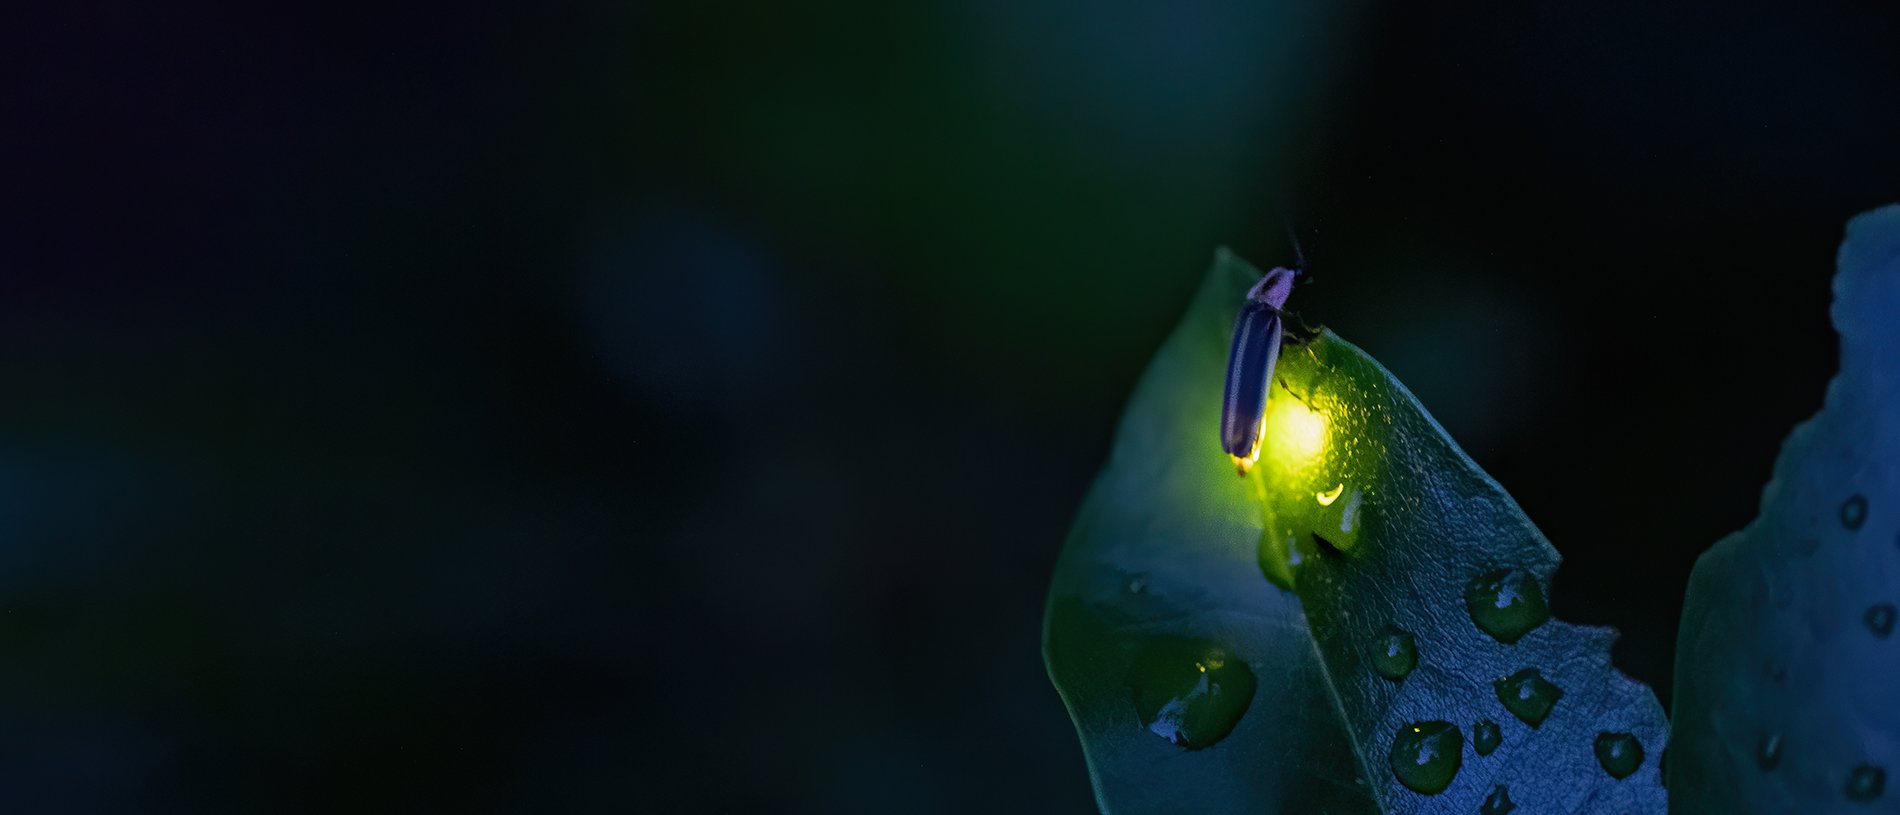 Тъмно изображение с флагли, осветяващо мокро листо